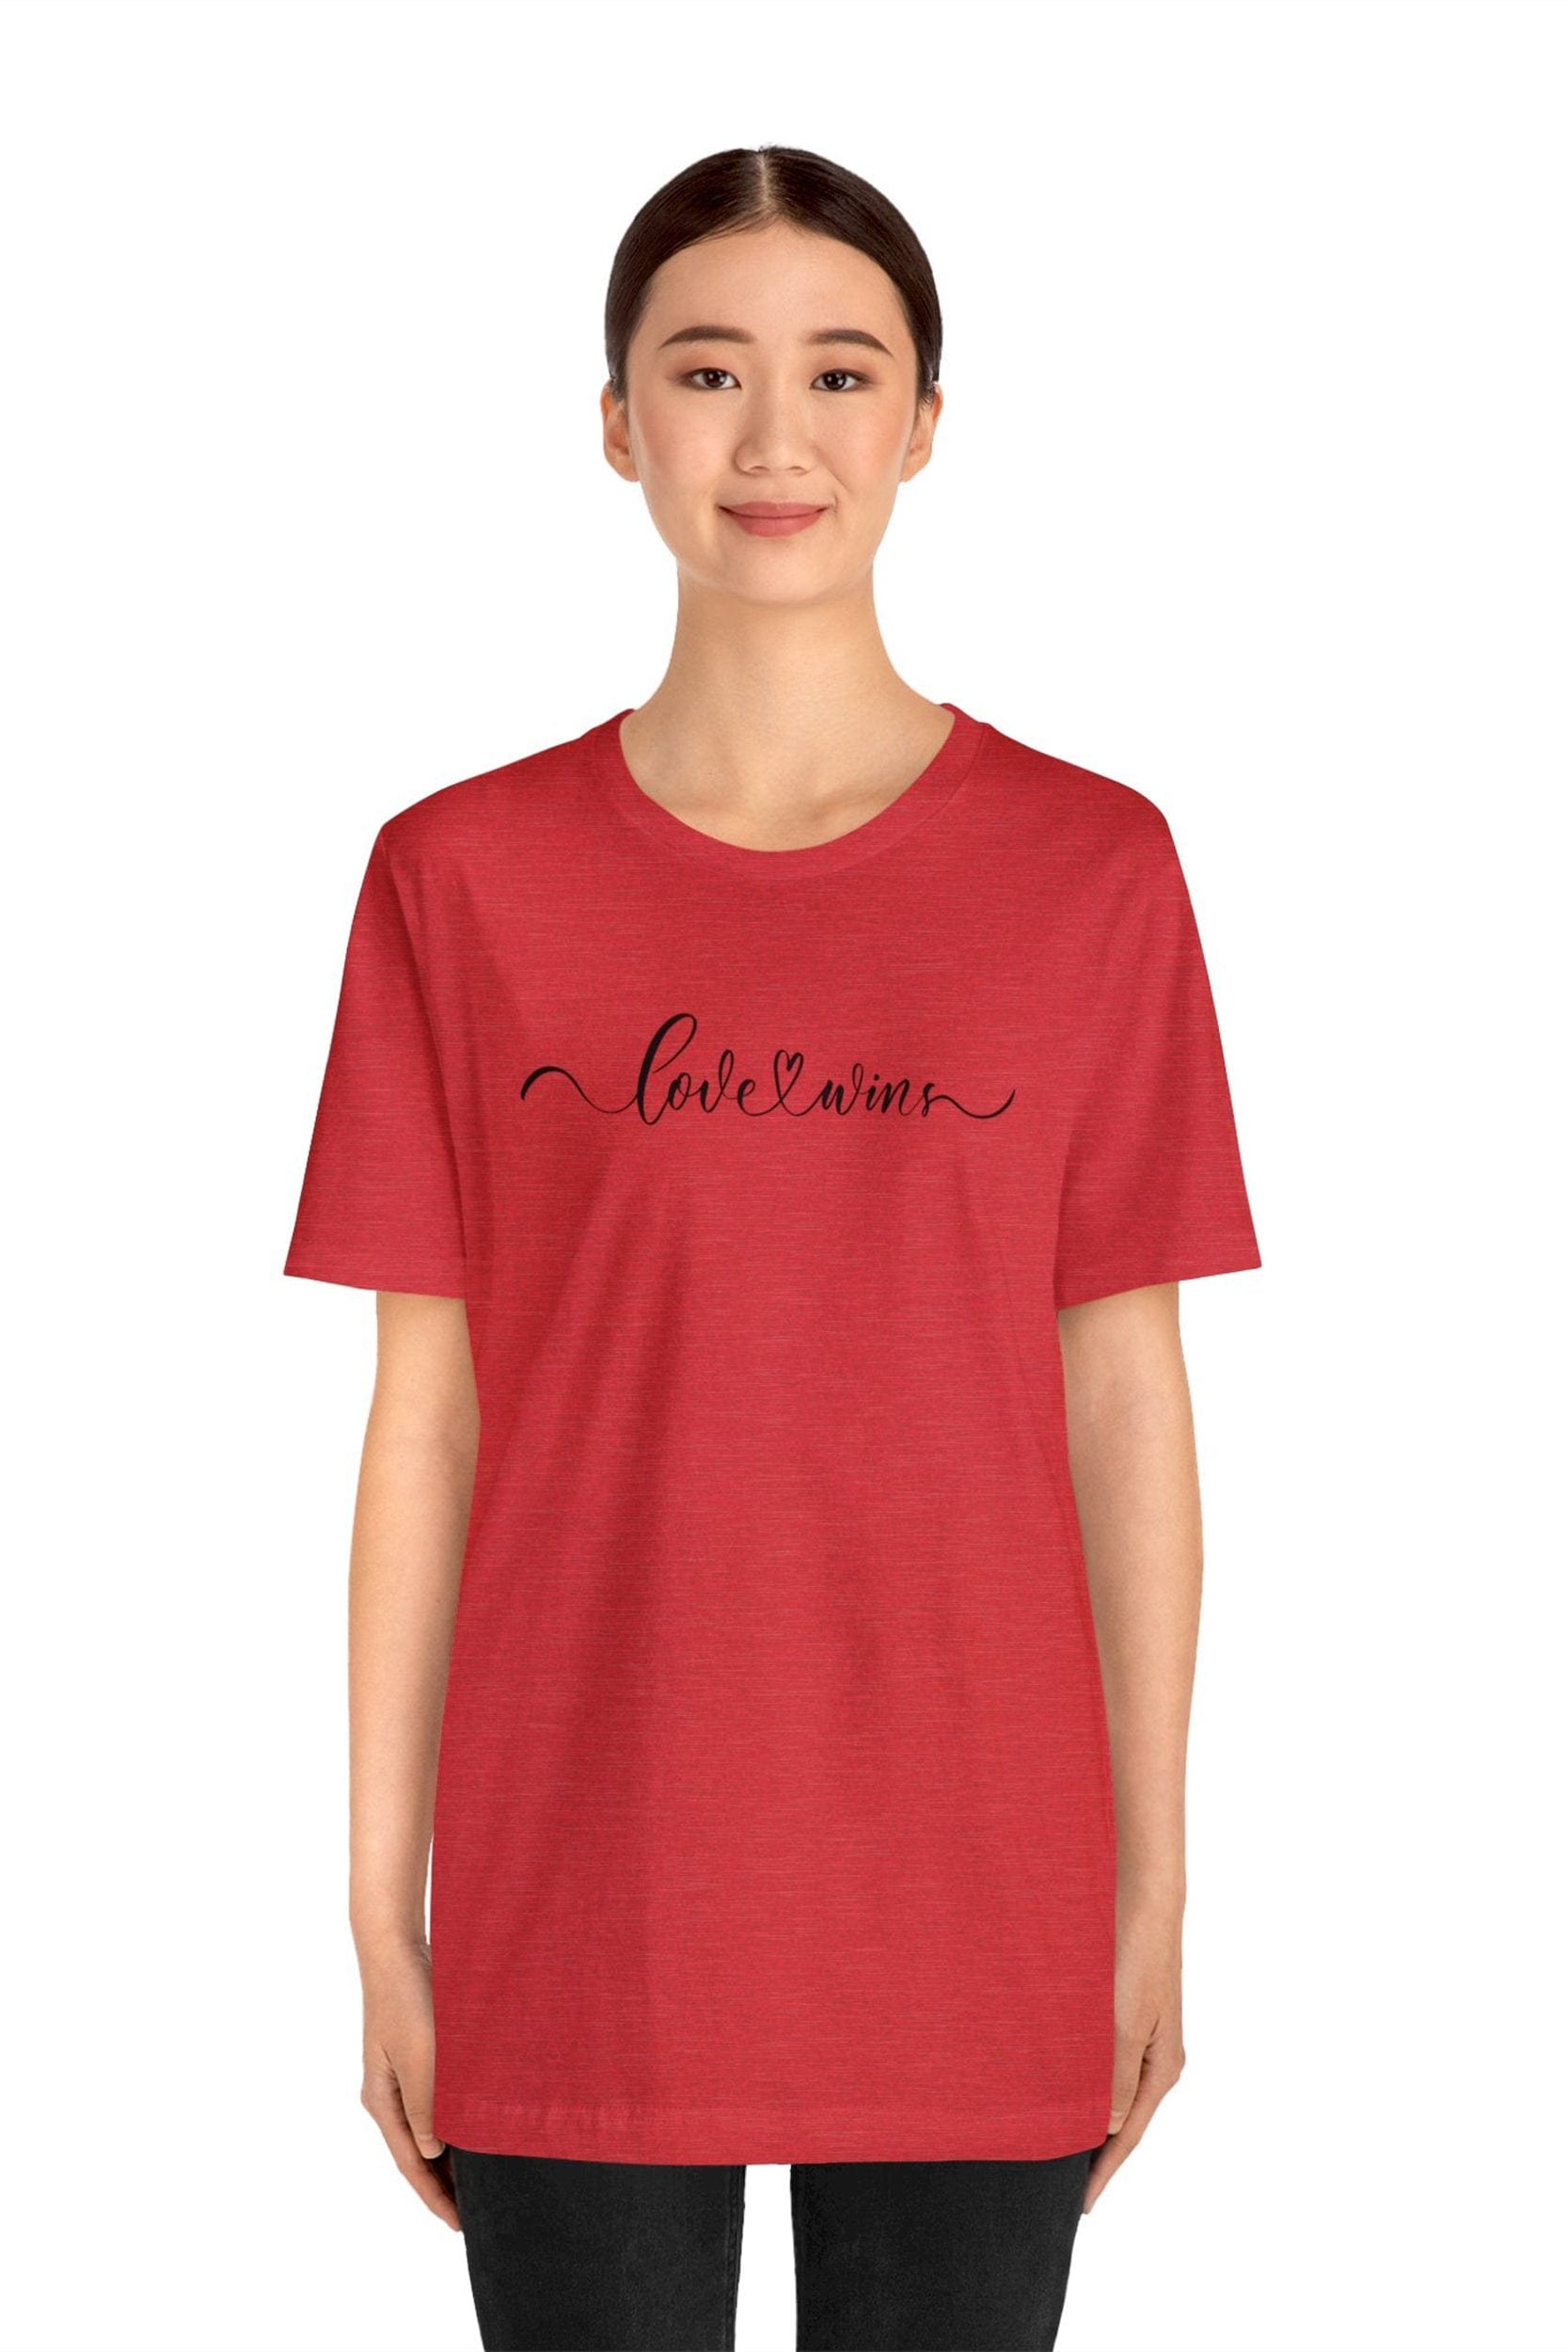 "love wins" T-Shirt